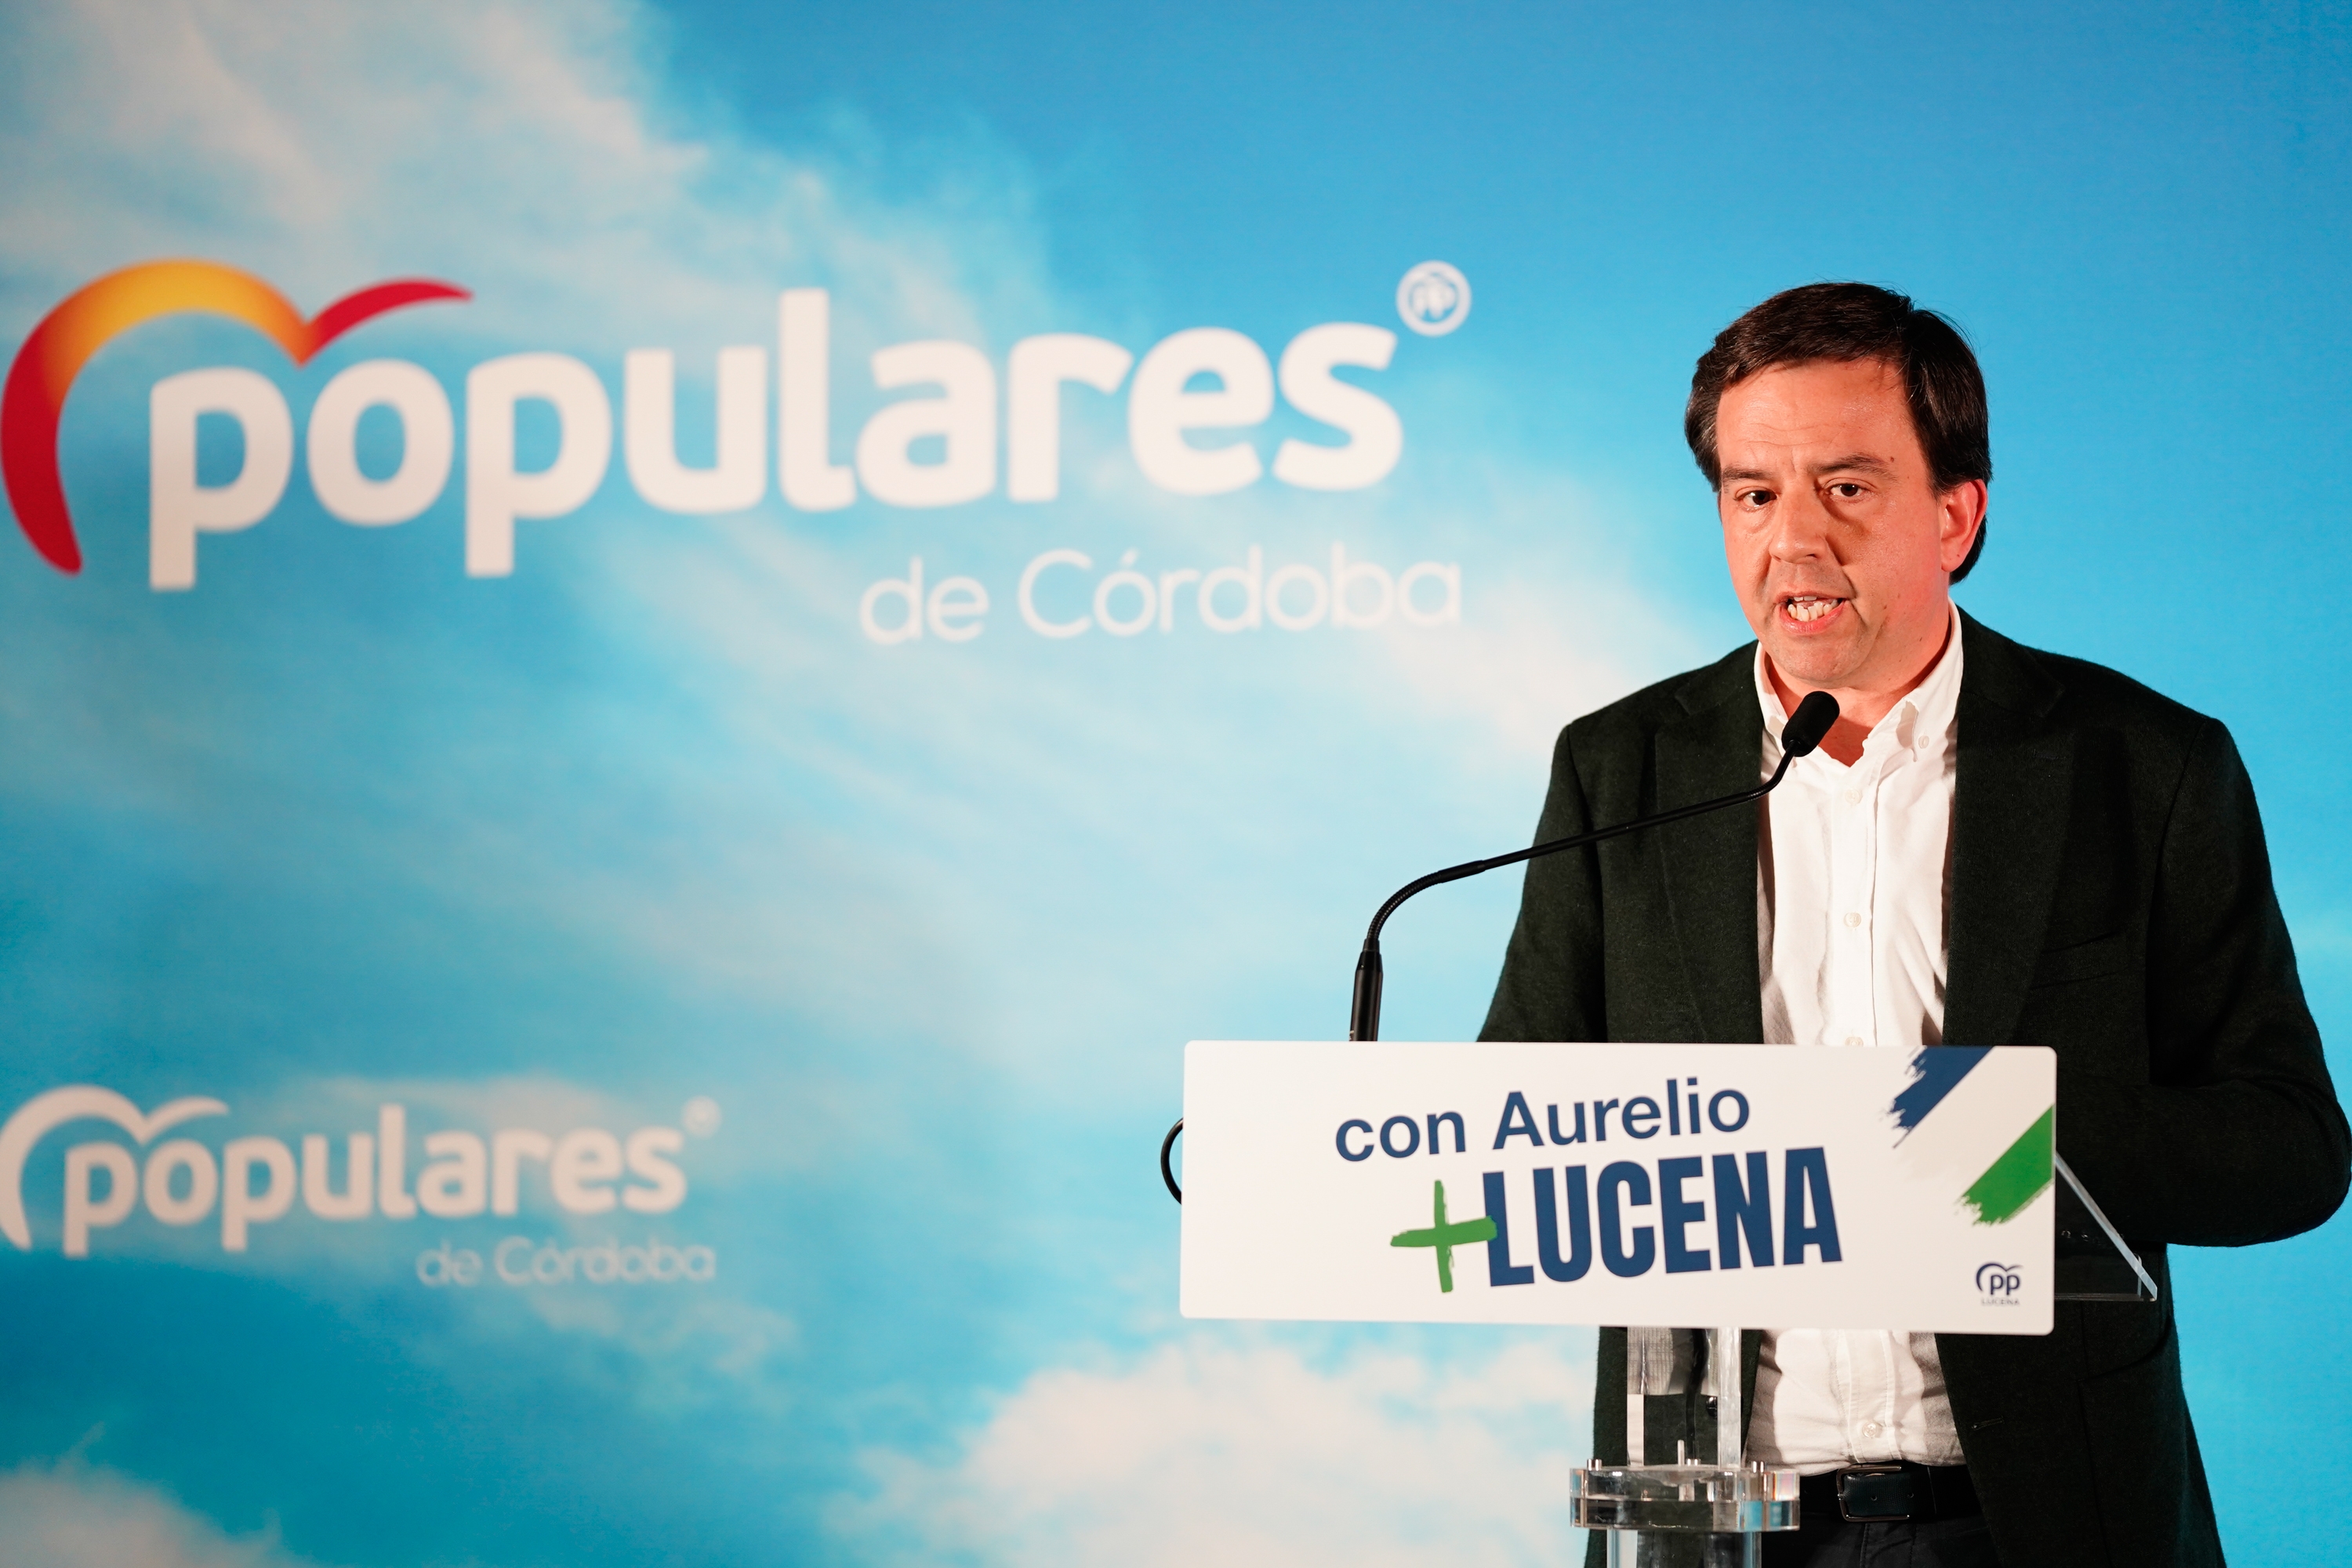 Presentación de la candidatura de Aurelio Fernández